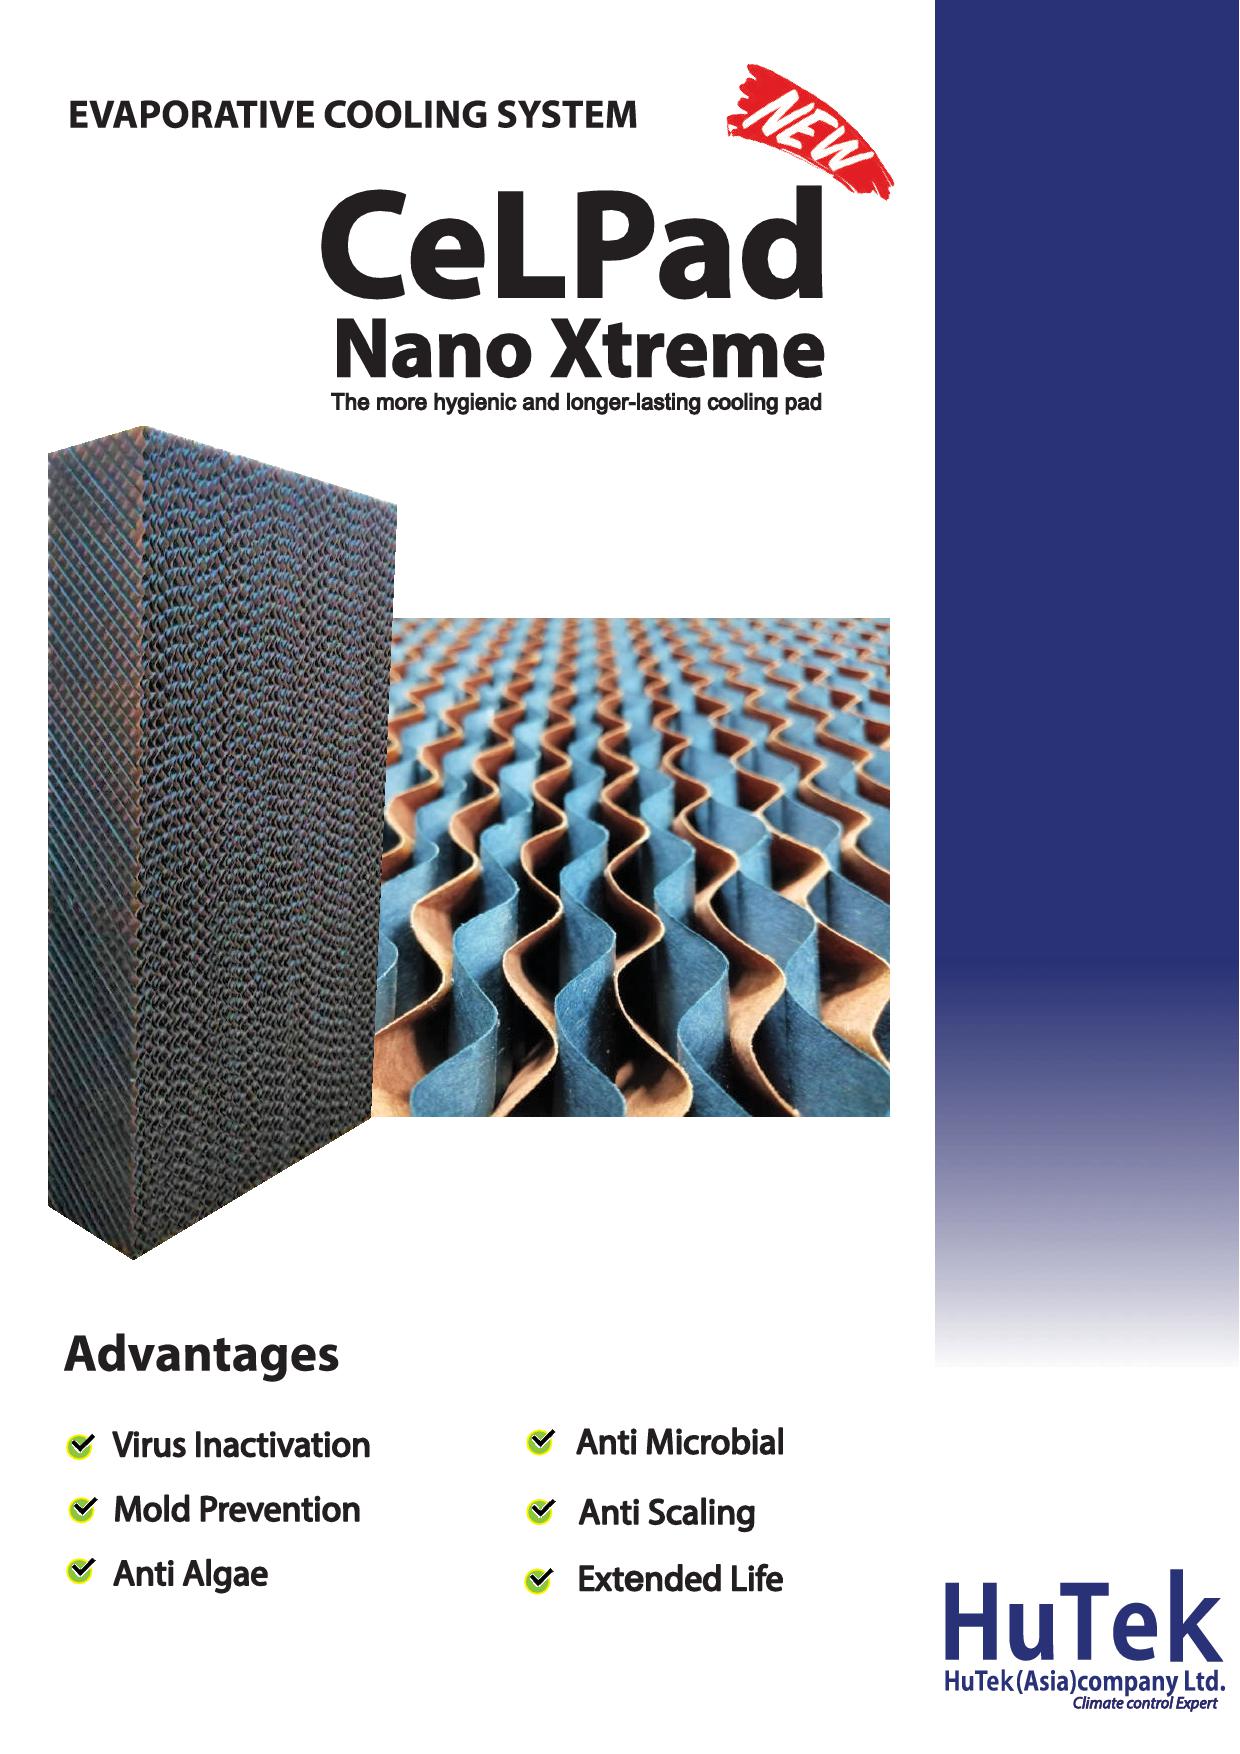 CeLPad Nano Xtreme